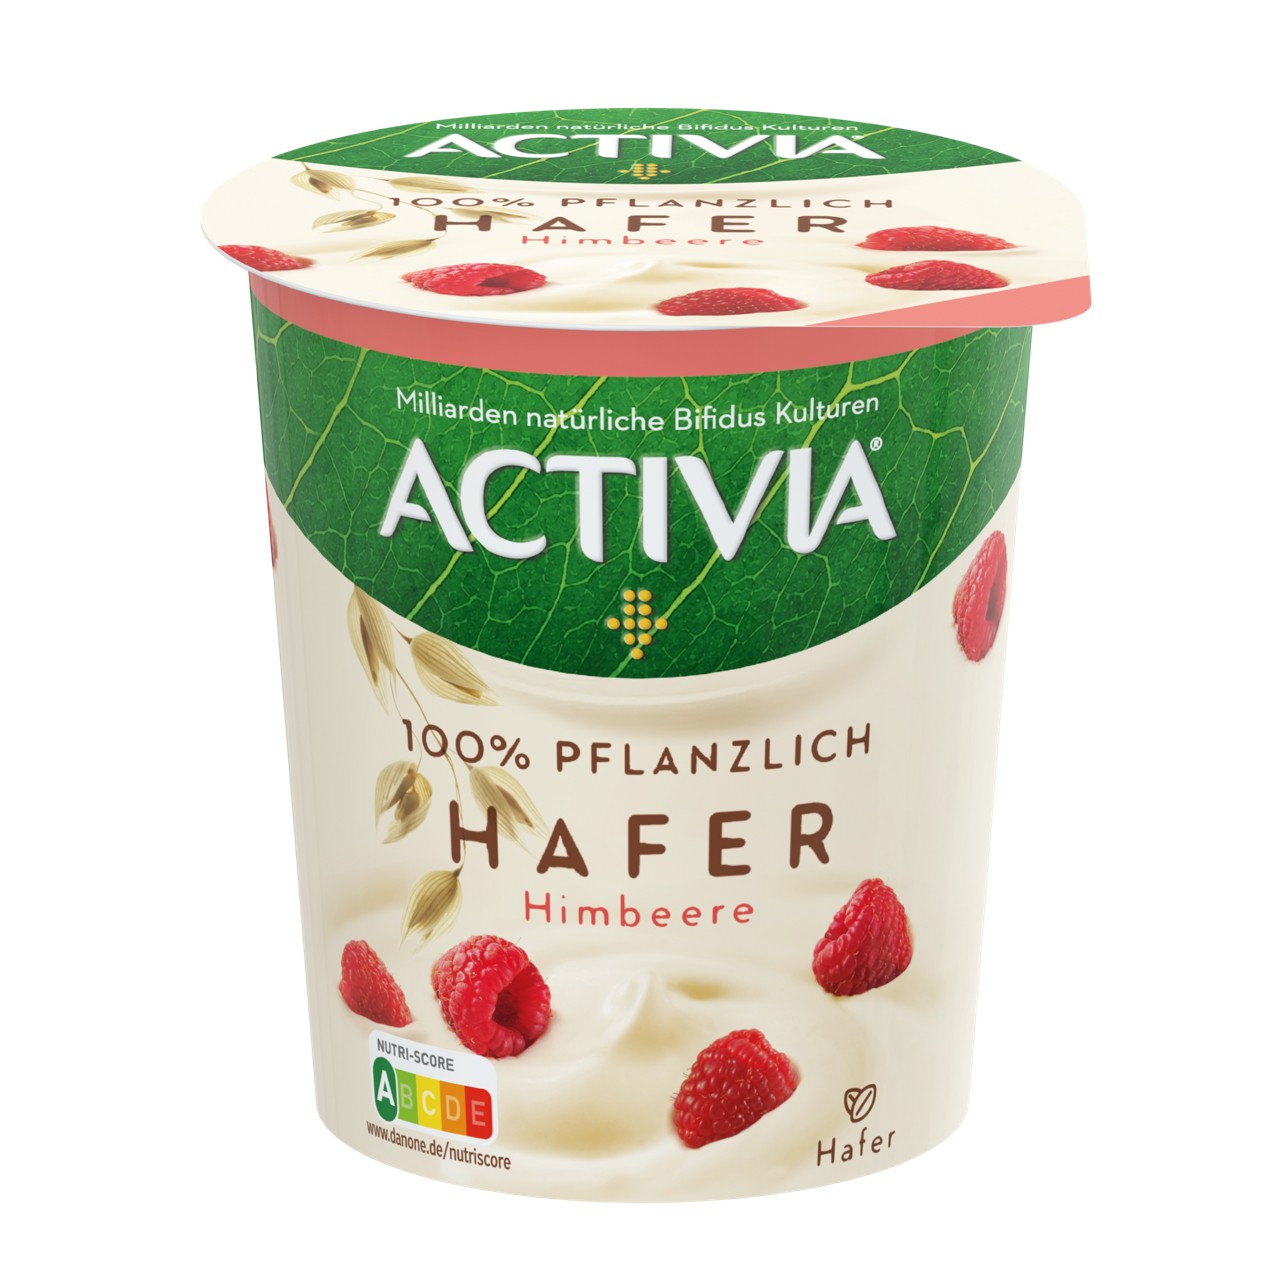 Acticia Joghurt jetzt auch rein pflanzlich auf Haferbasis